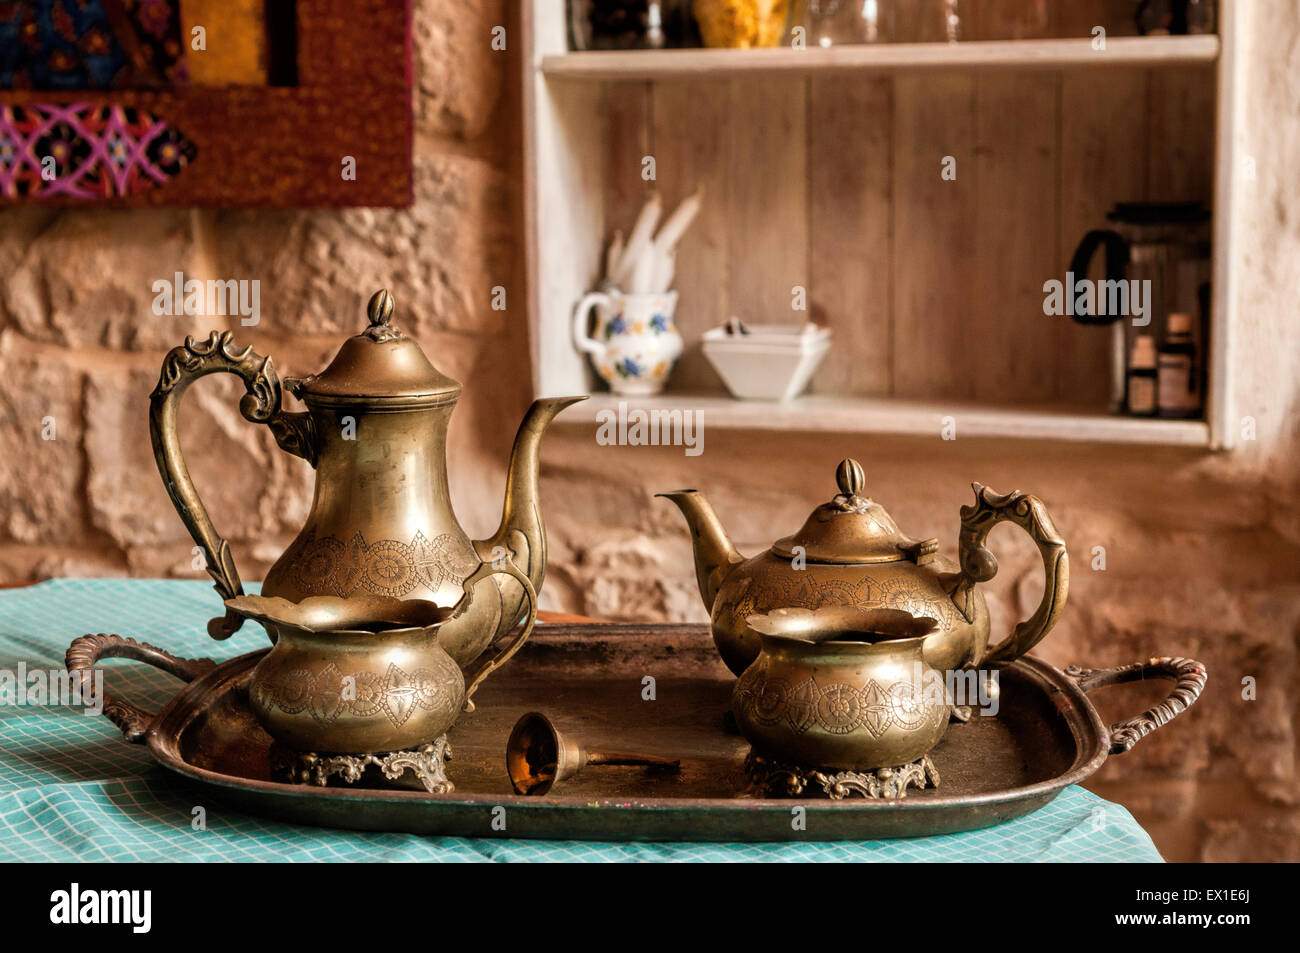 Cena de platos de café y té de la antigua campana de bronce en la bandeja con la llamada de los trabajadores Foto de stock